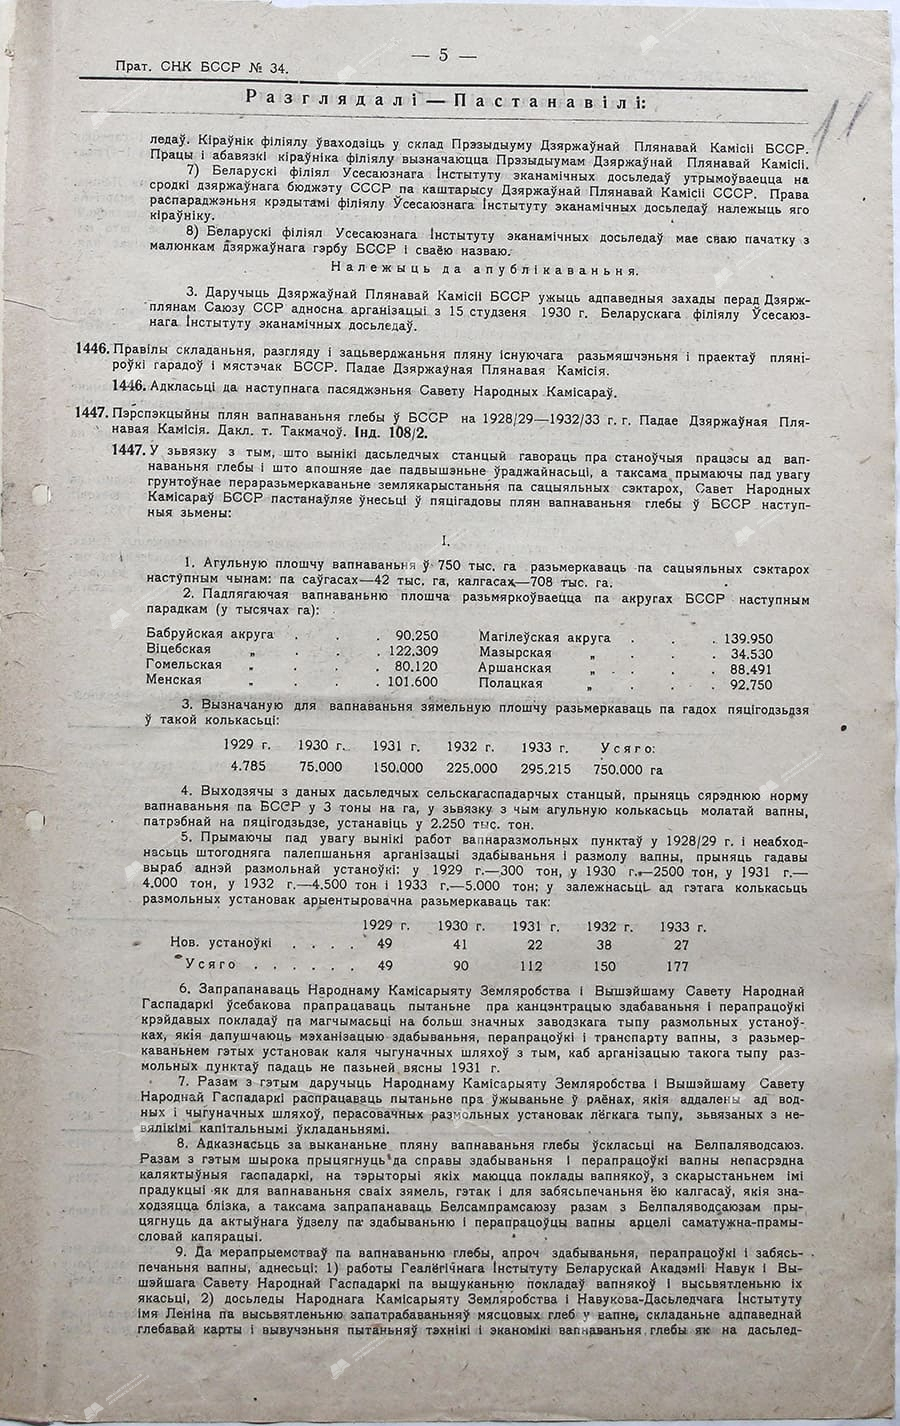 Пратакол №34 пасяджэньня Савету Народных Камісараў Беларускае ССР за 12 студзеня 1930 г.-с. 2